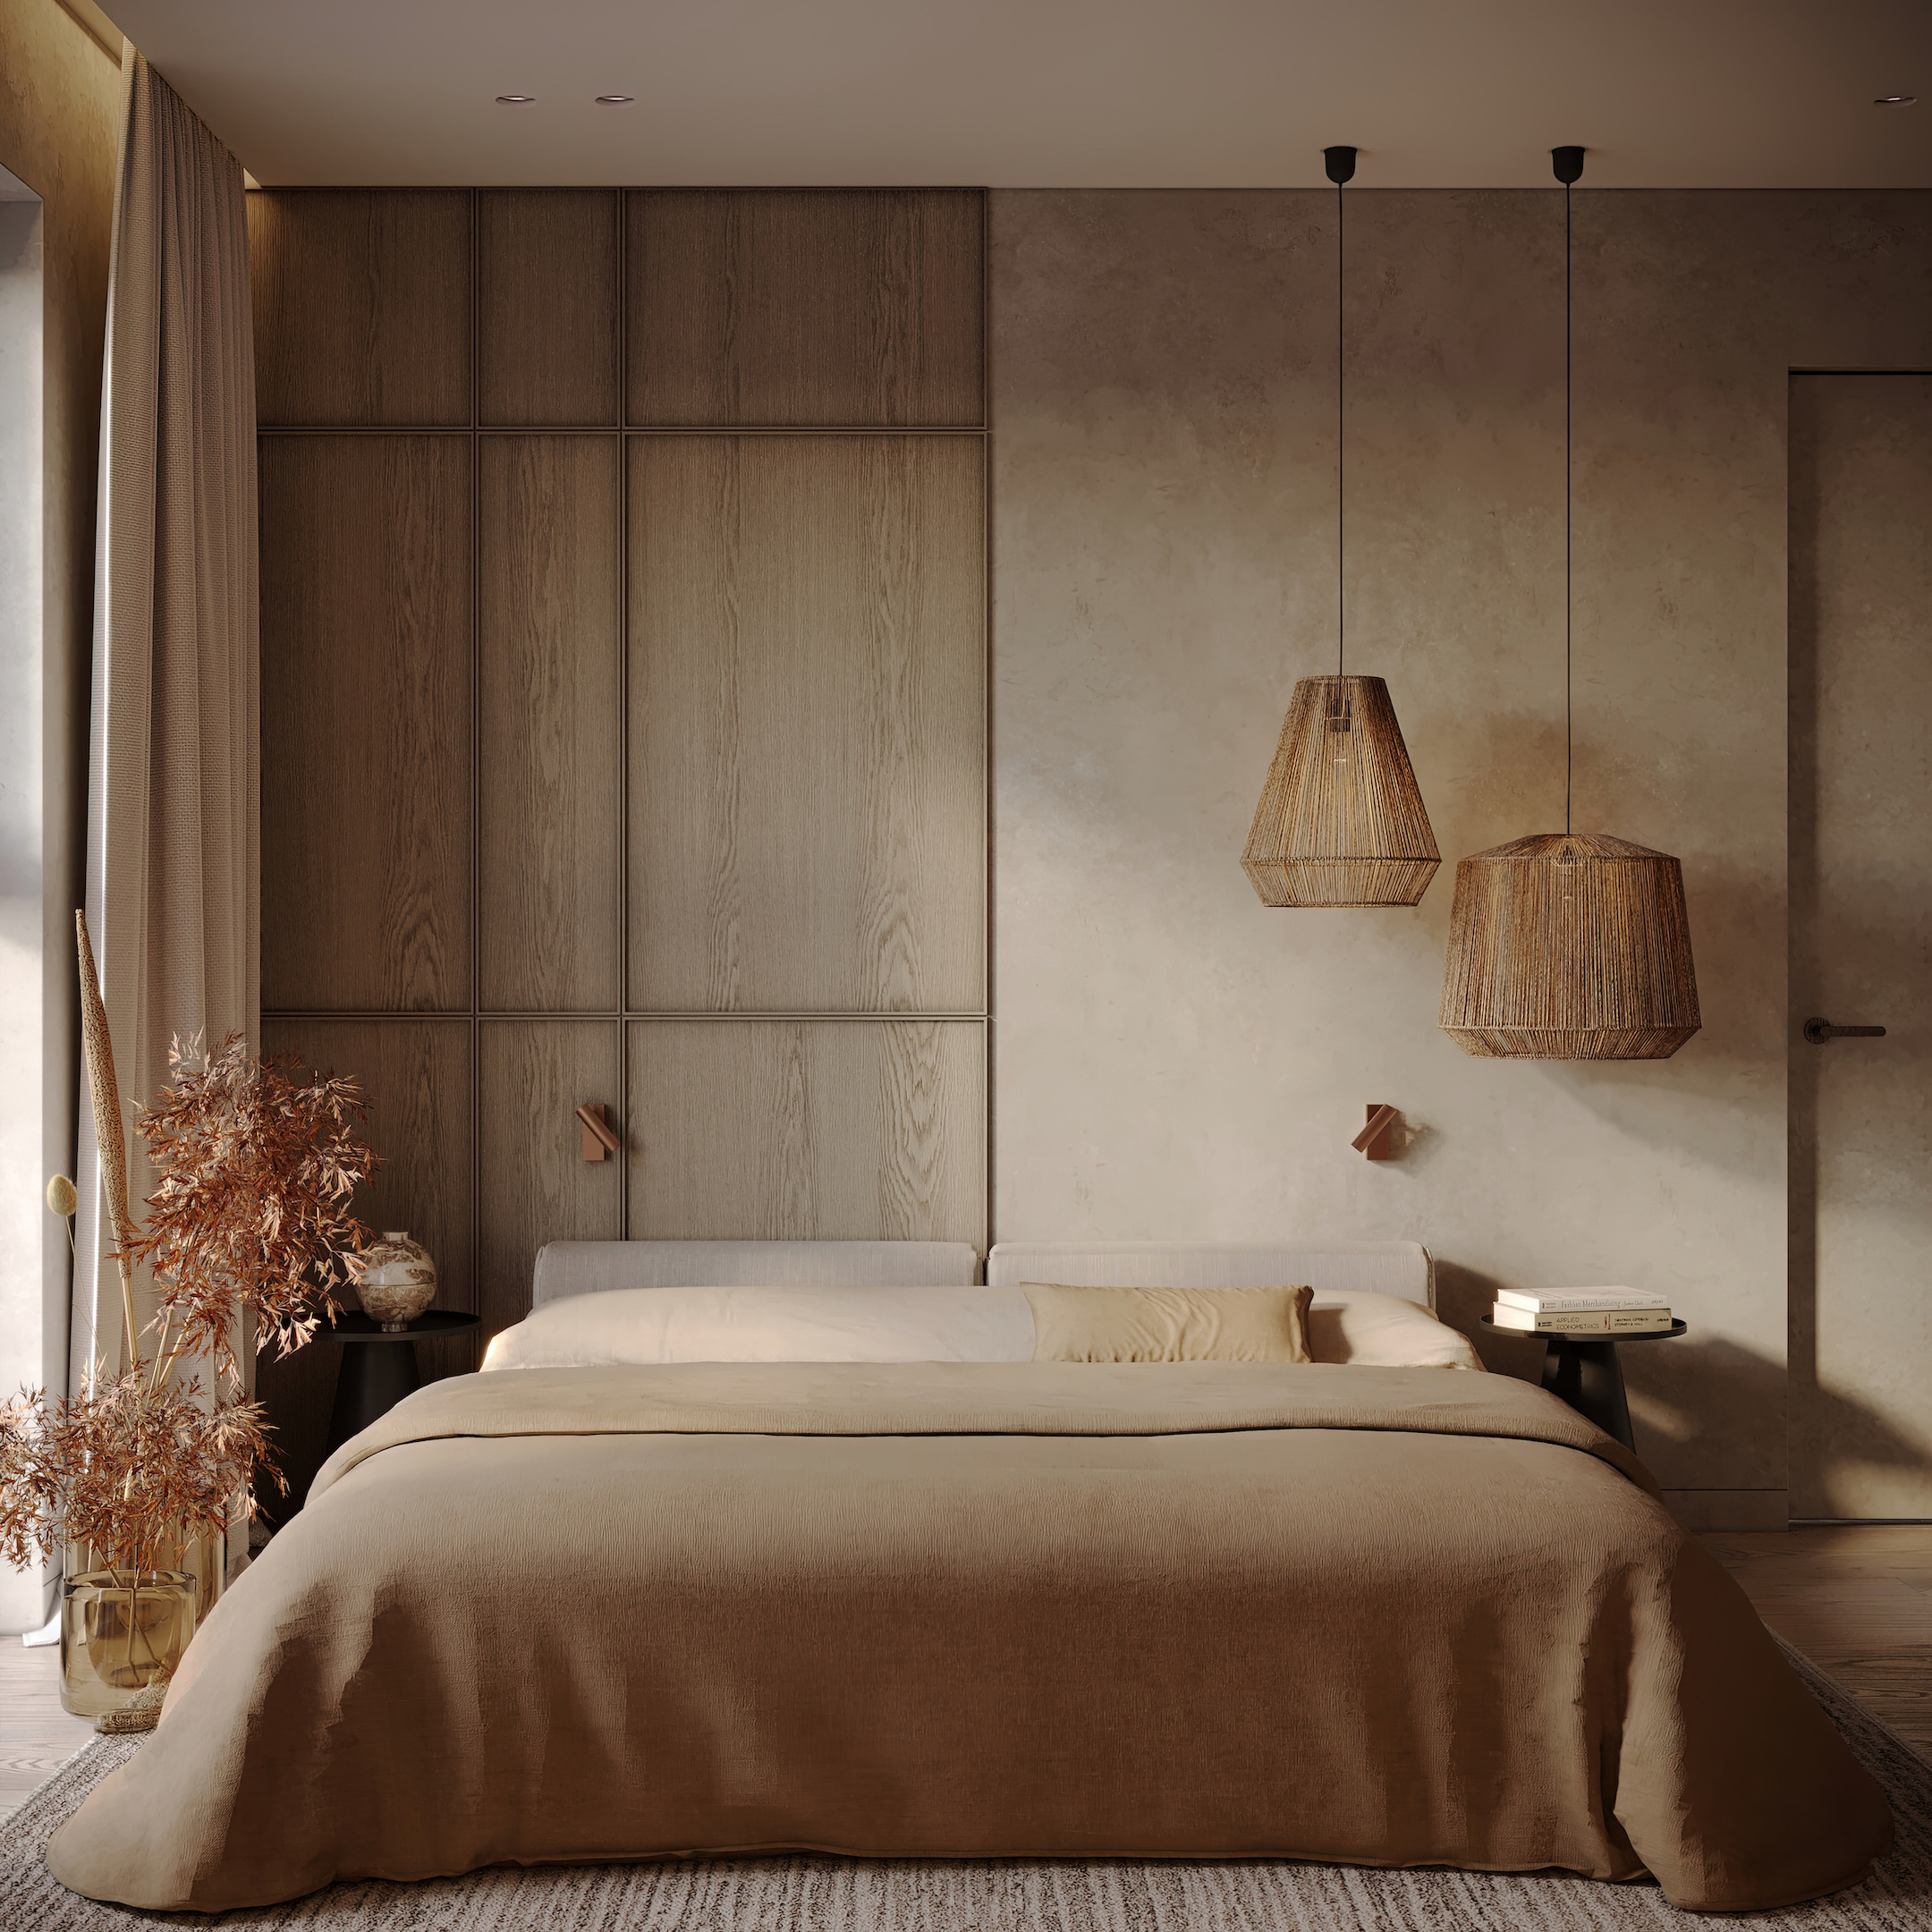 Мягкое изголовье кровати, подвесные светильники из джута, комбинированная отделка стены